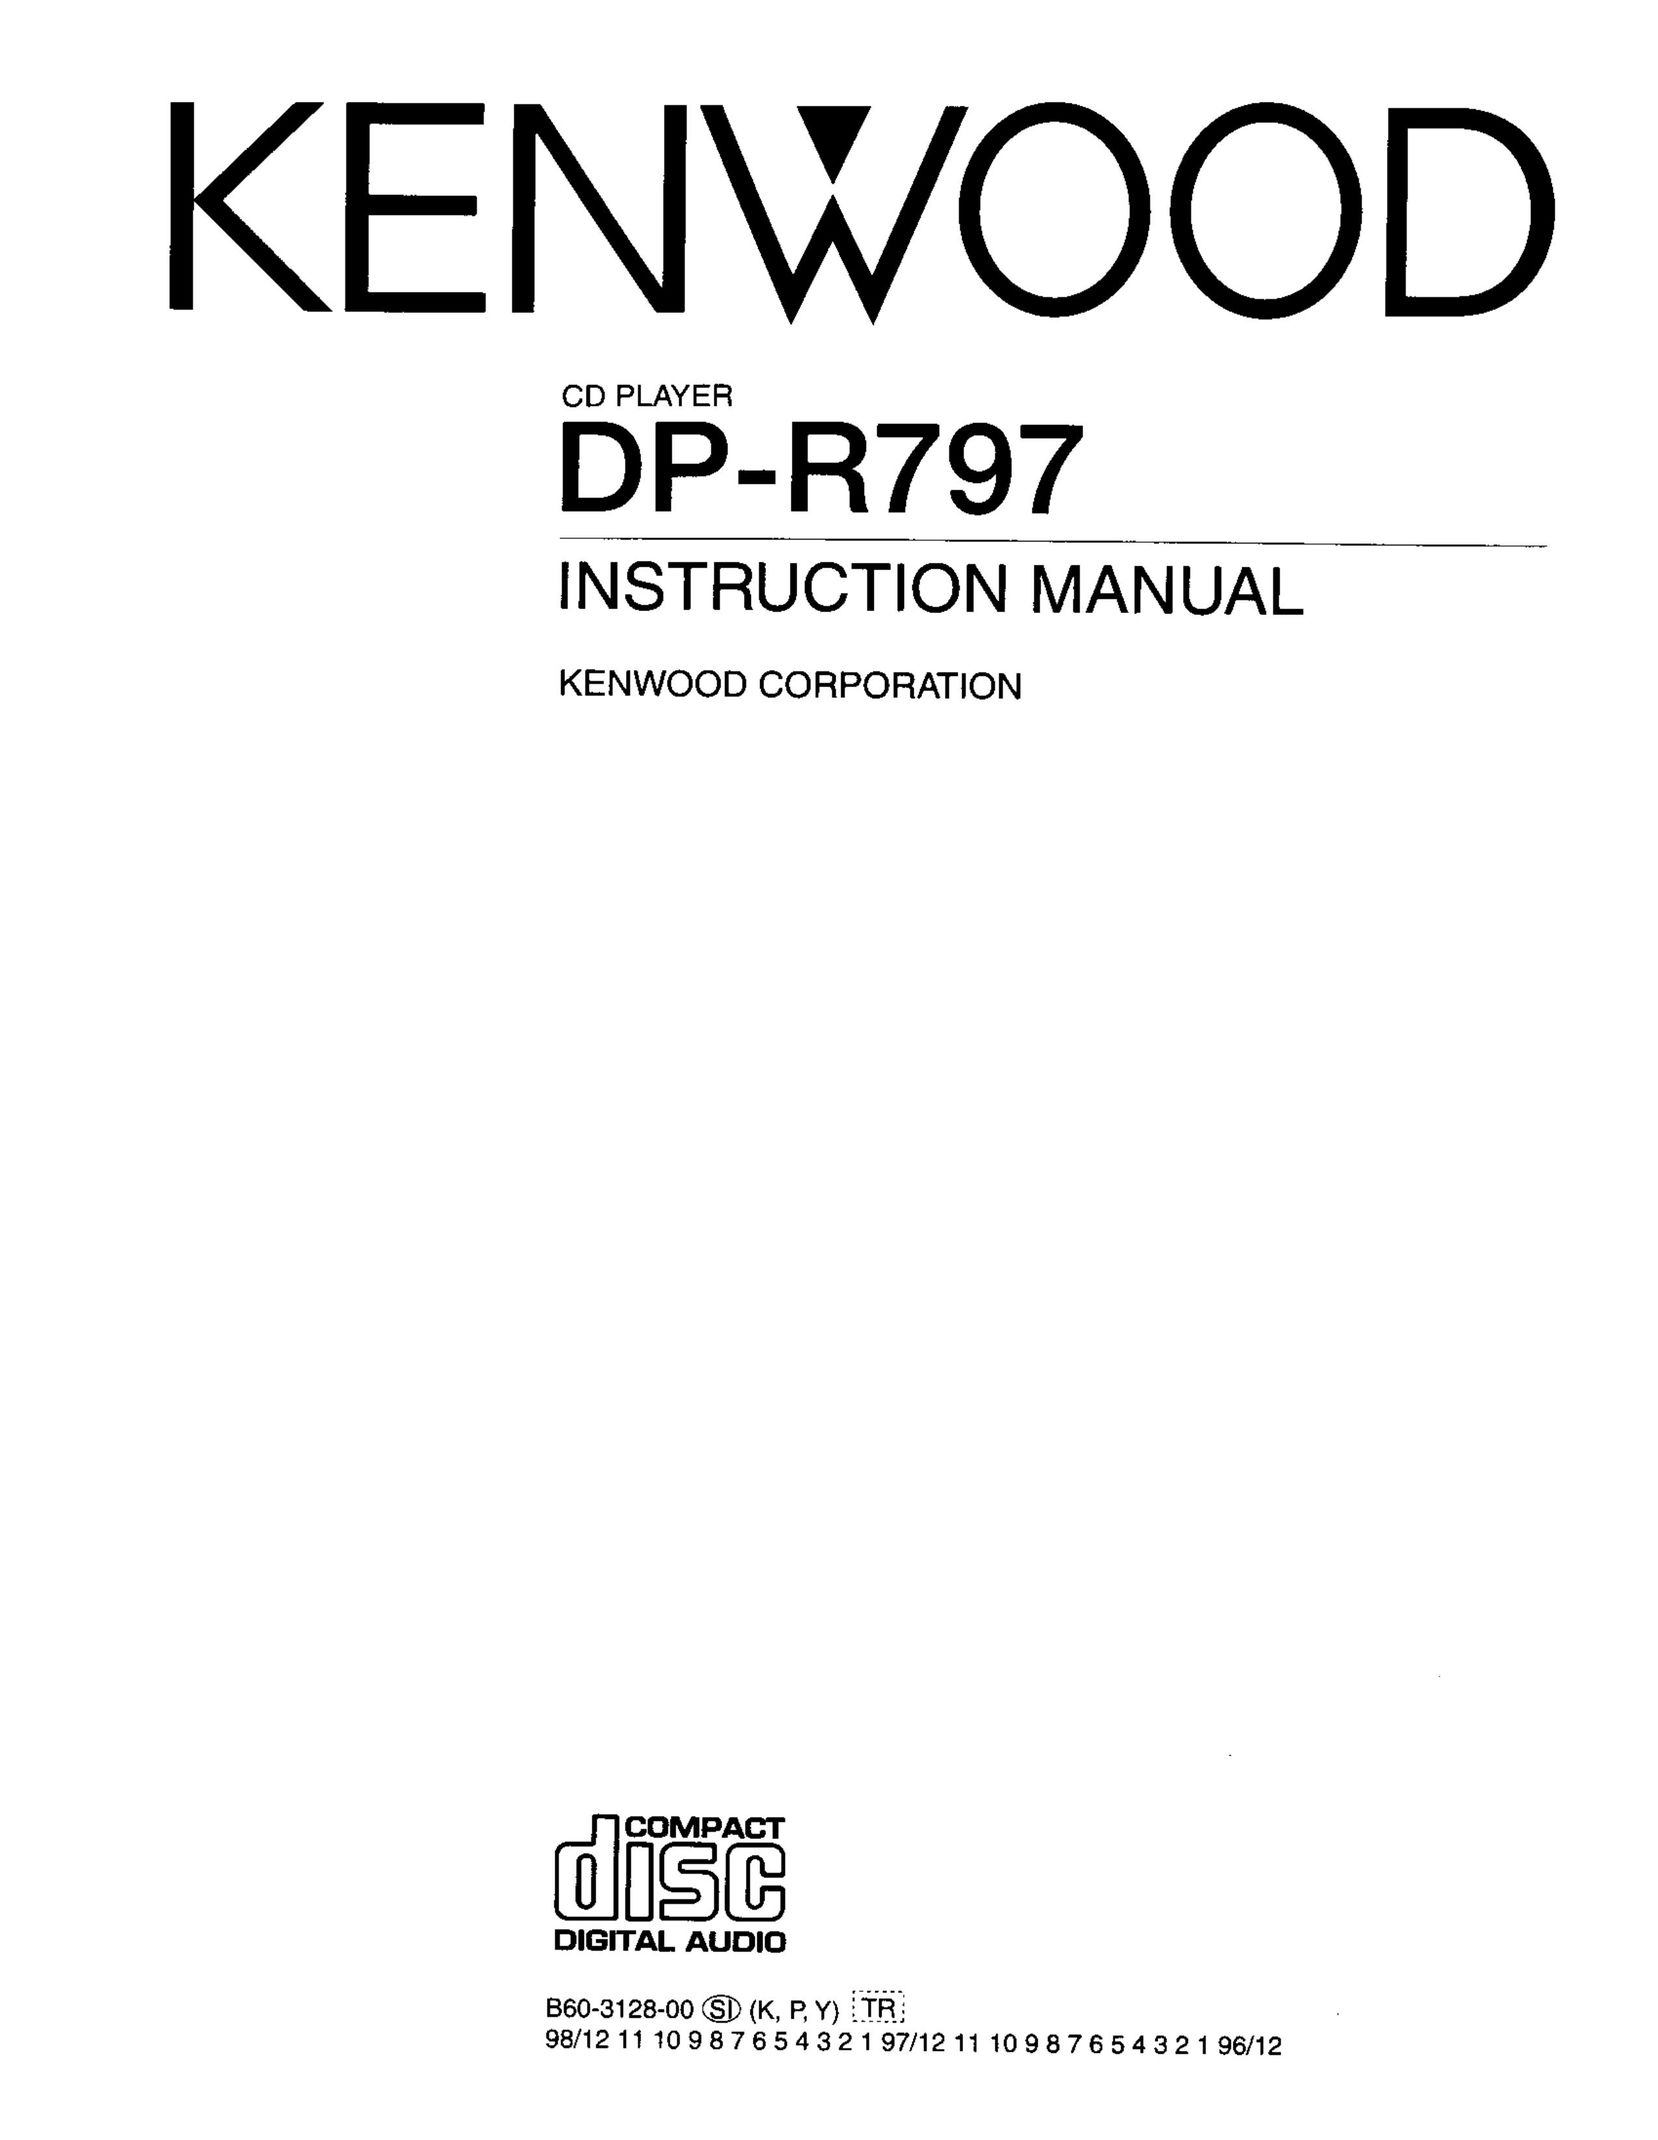 Kenwood DP-R797 CD Player User Manual